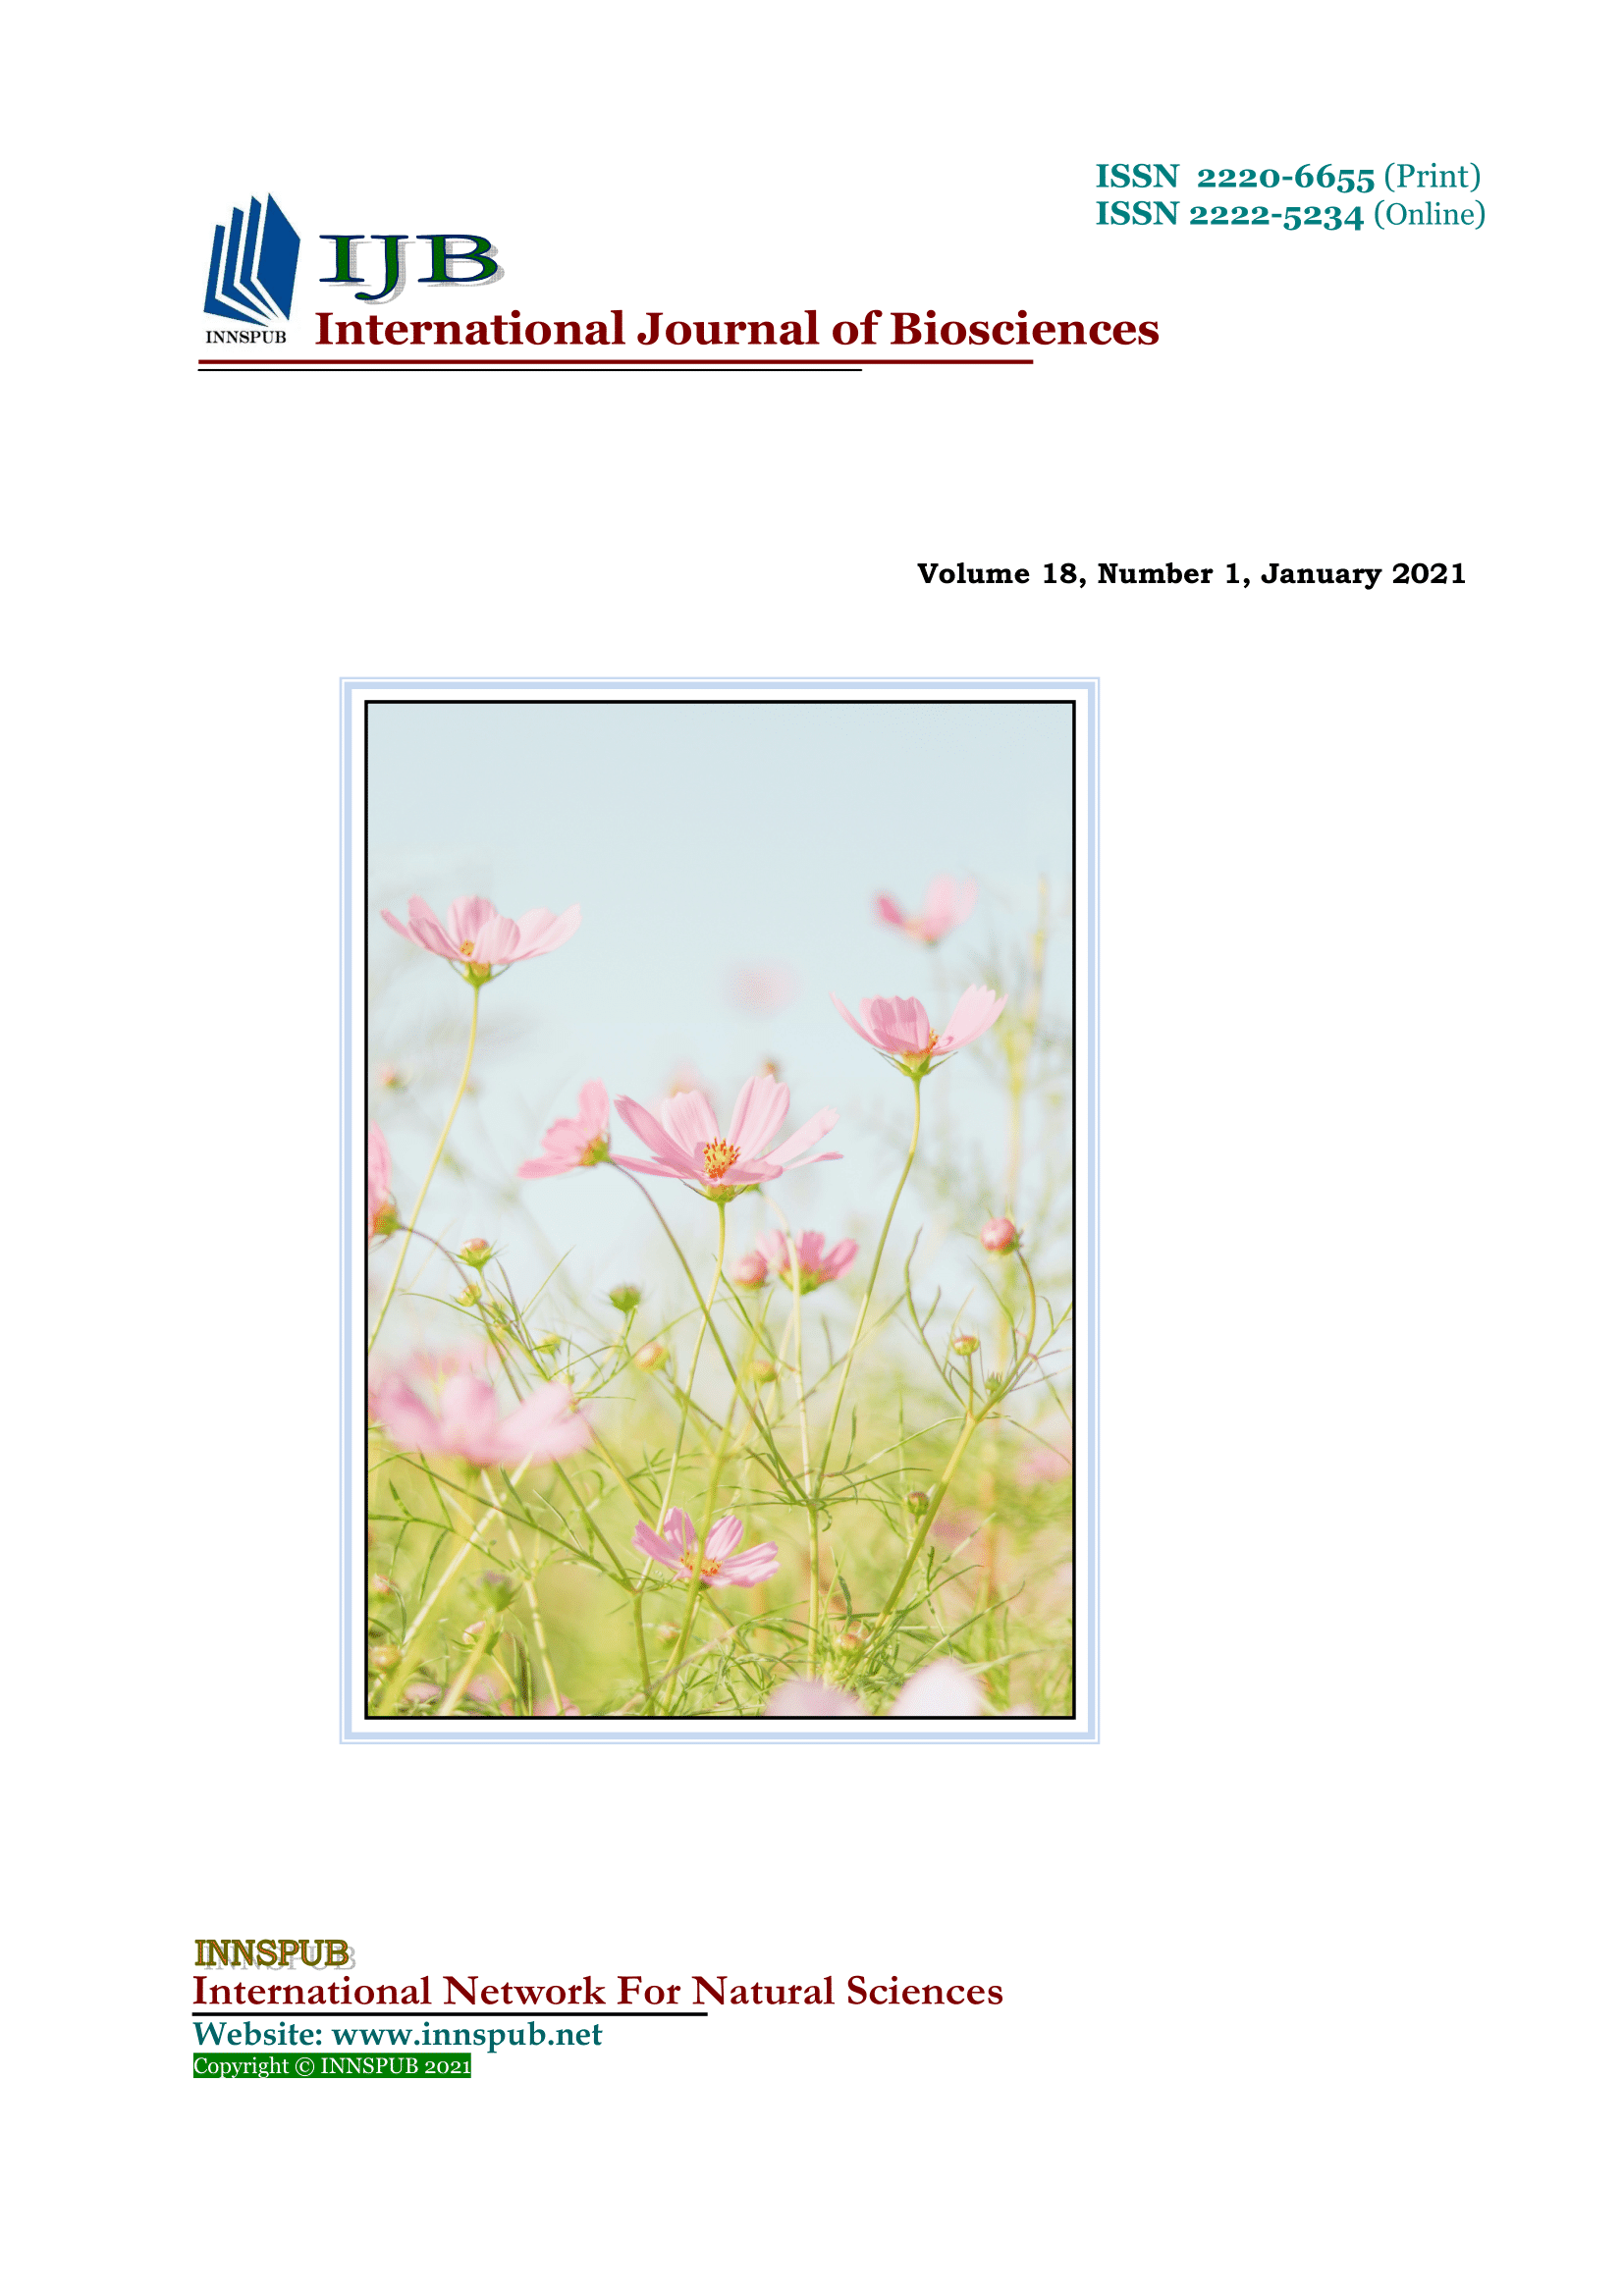 写真素材 naturalimages Vol.18 WITH FLOWERS-www.malaikagroup.com